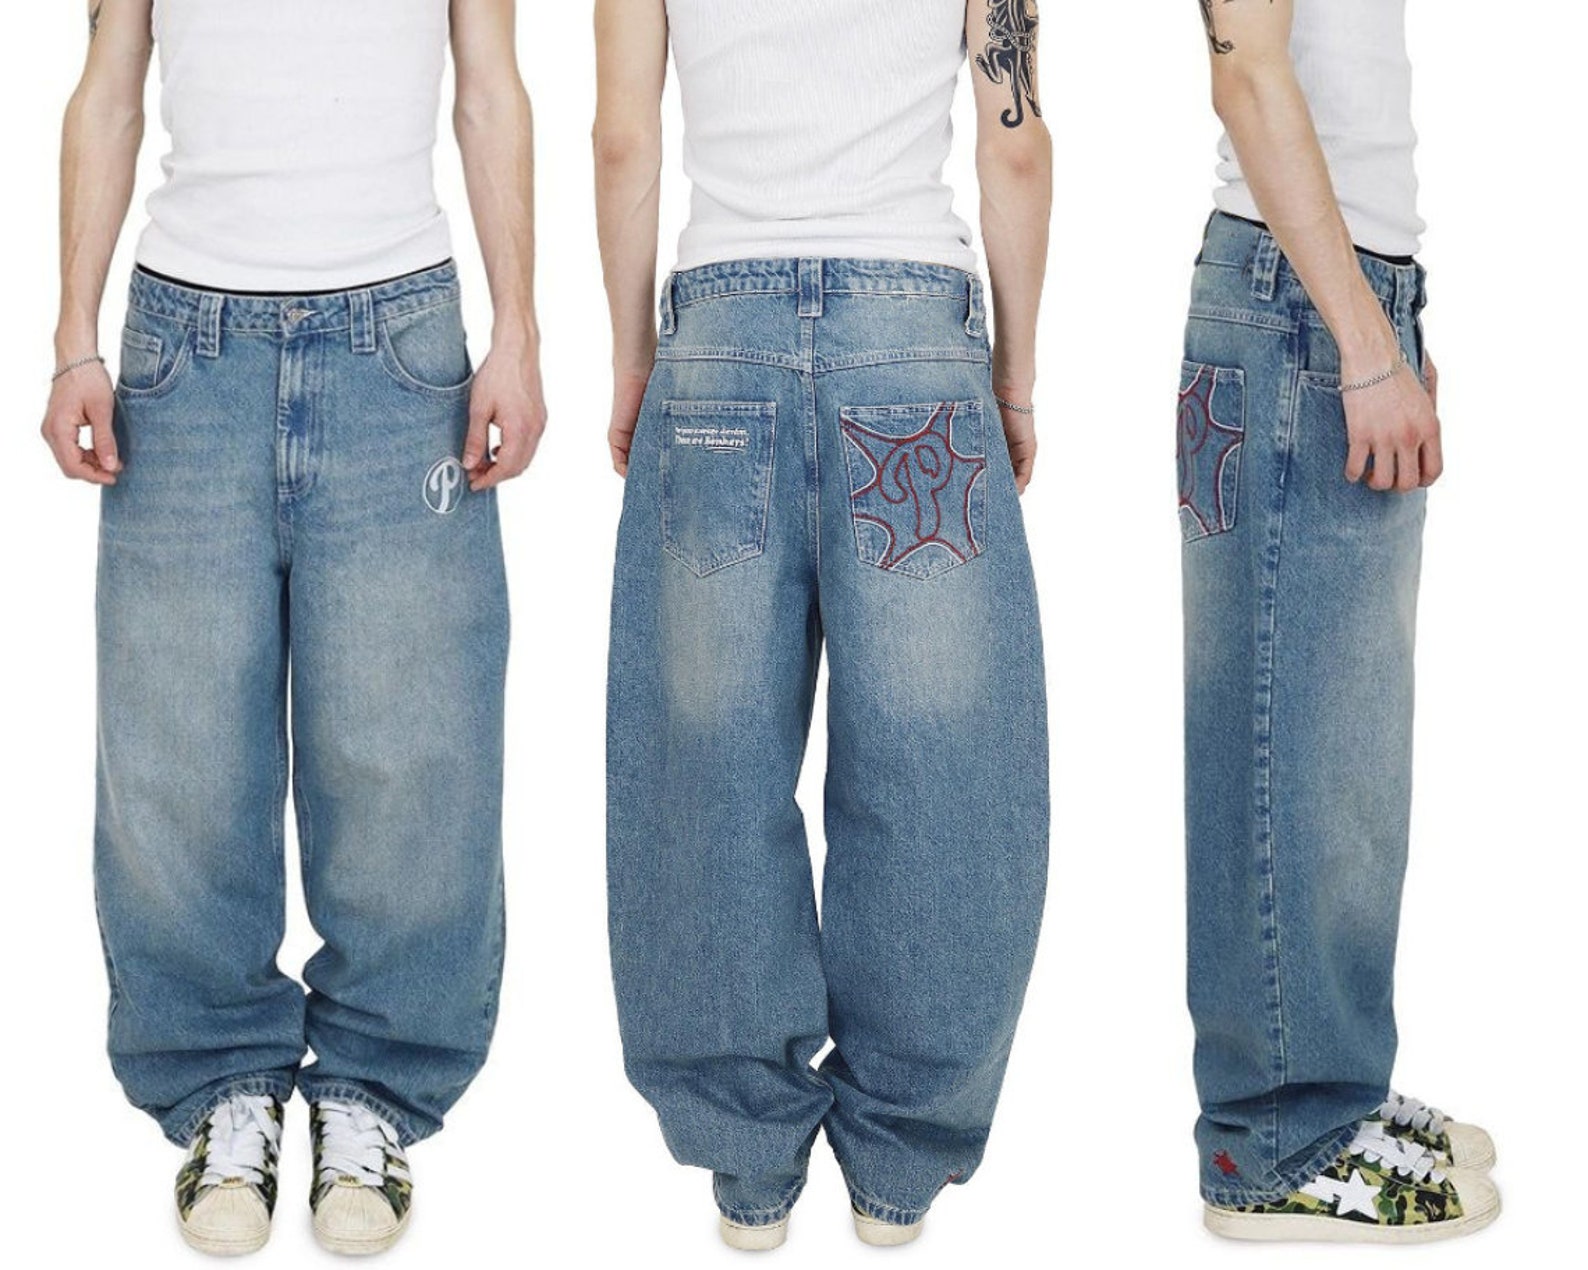 Baggy Denim Skater Jeans Front and Back Designs - Etsy